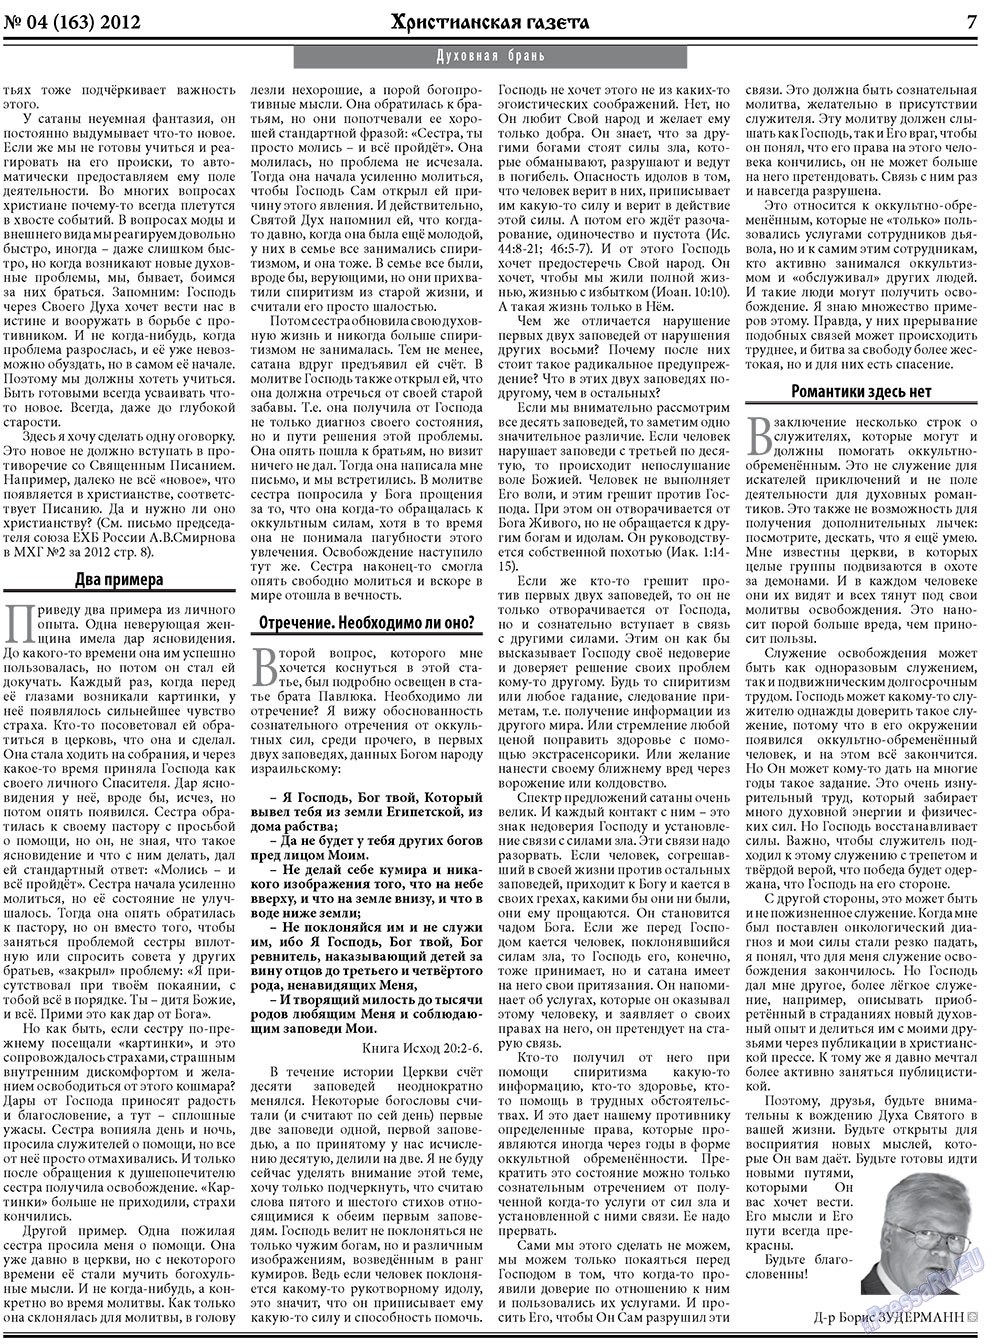 Христианская газета, газета. 2012 №4 стр.7